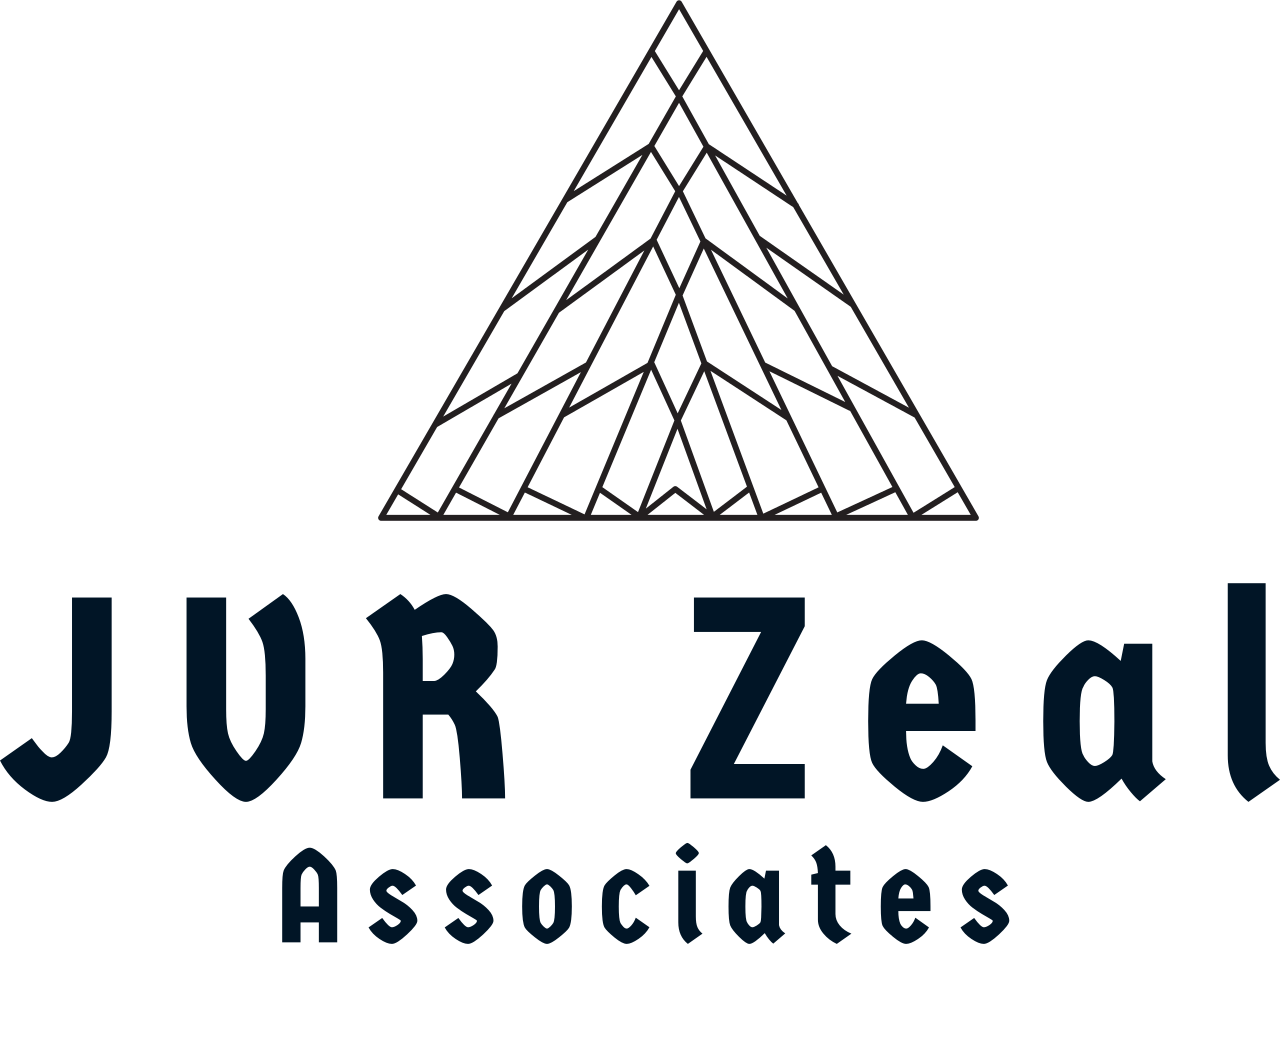 JVR Zeal 's logo